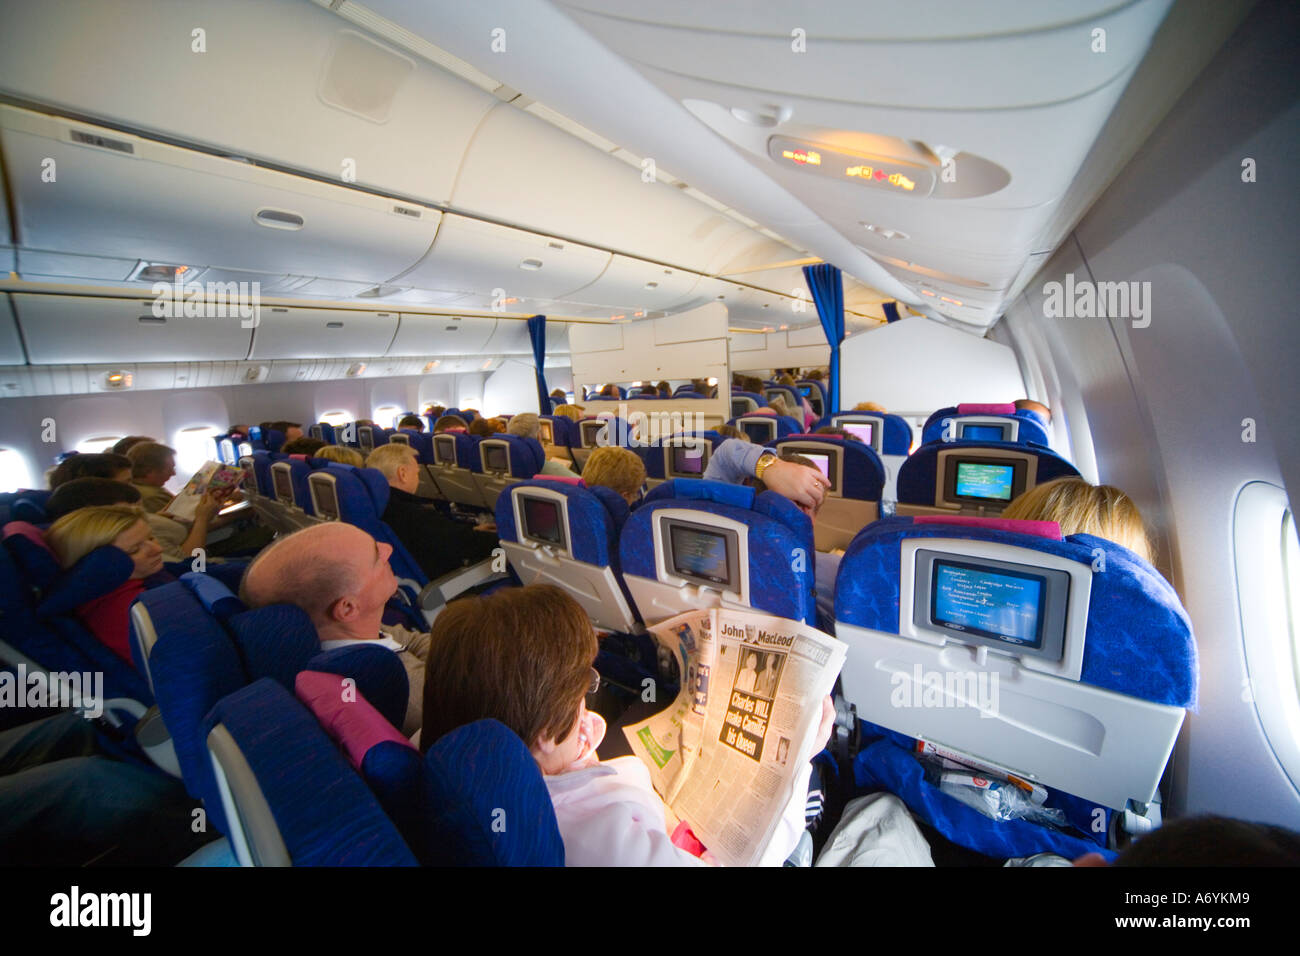 Passeggeri nella affollatissima classe economy cabina su aeromobili Boeing 777 in volo con segnale di allacciare le cinture di sicurezza JMH illuminato1252 Foto Stock